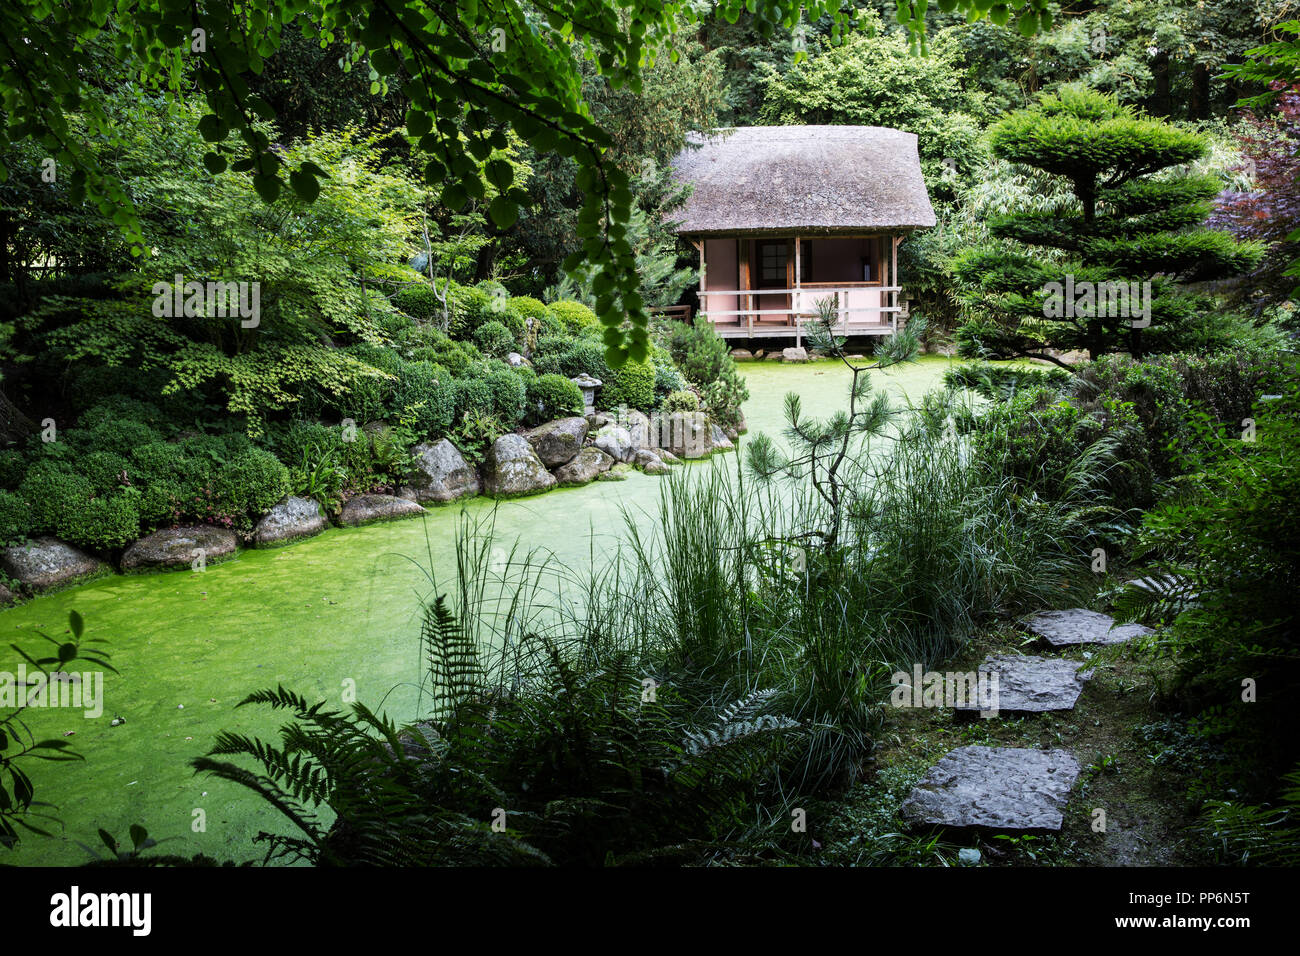 Point de vue des petites thatched hut entre les arbres dans un jardin de thé japonais avec petit sentier le long d'un étang. Banque D'Images